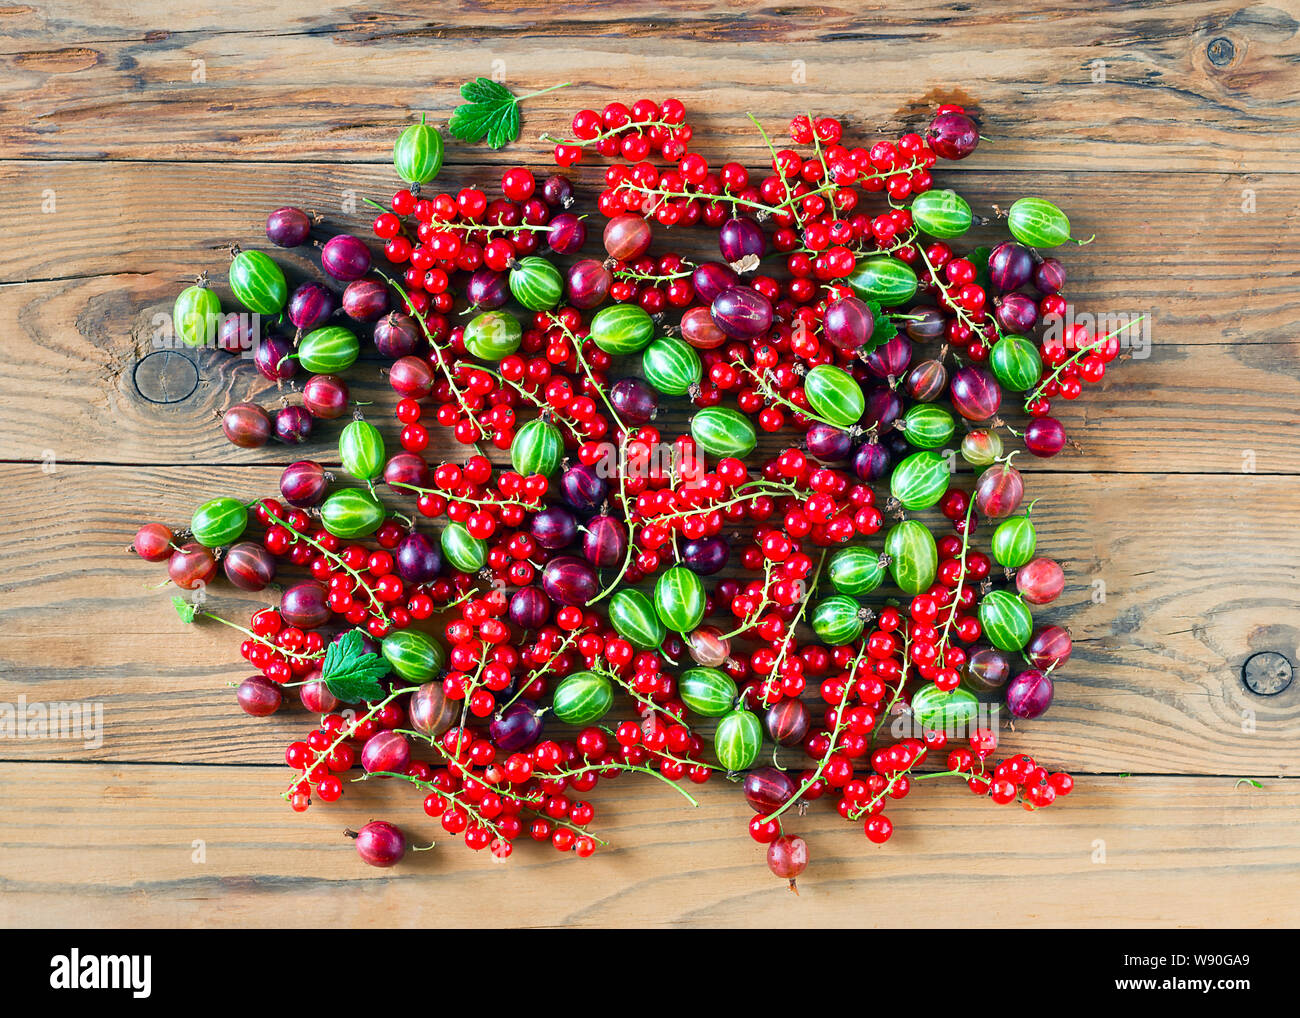 Vue descendante de feuilles vertes et rouges fraîchement récolté les fruits de cassis, de groseille rouge et verte sur la table en bois. Fond d'aliments biologiques. Banque D'Images